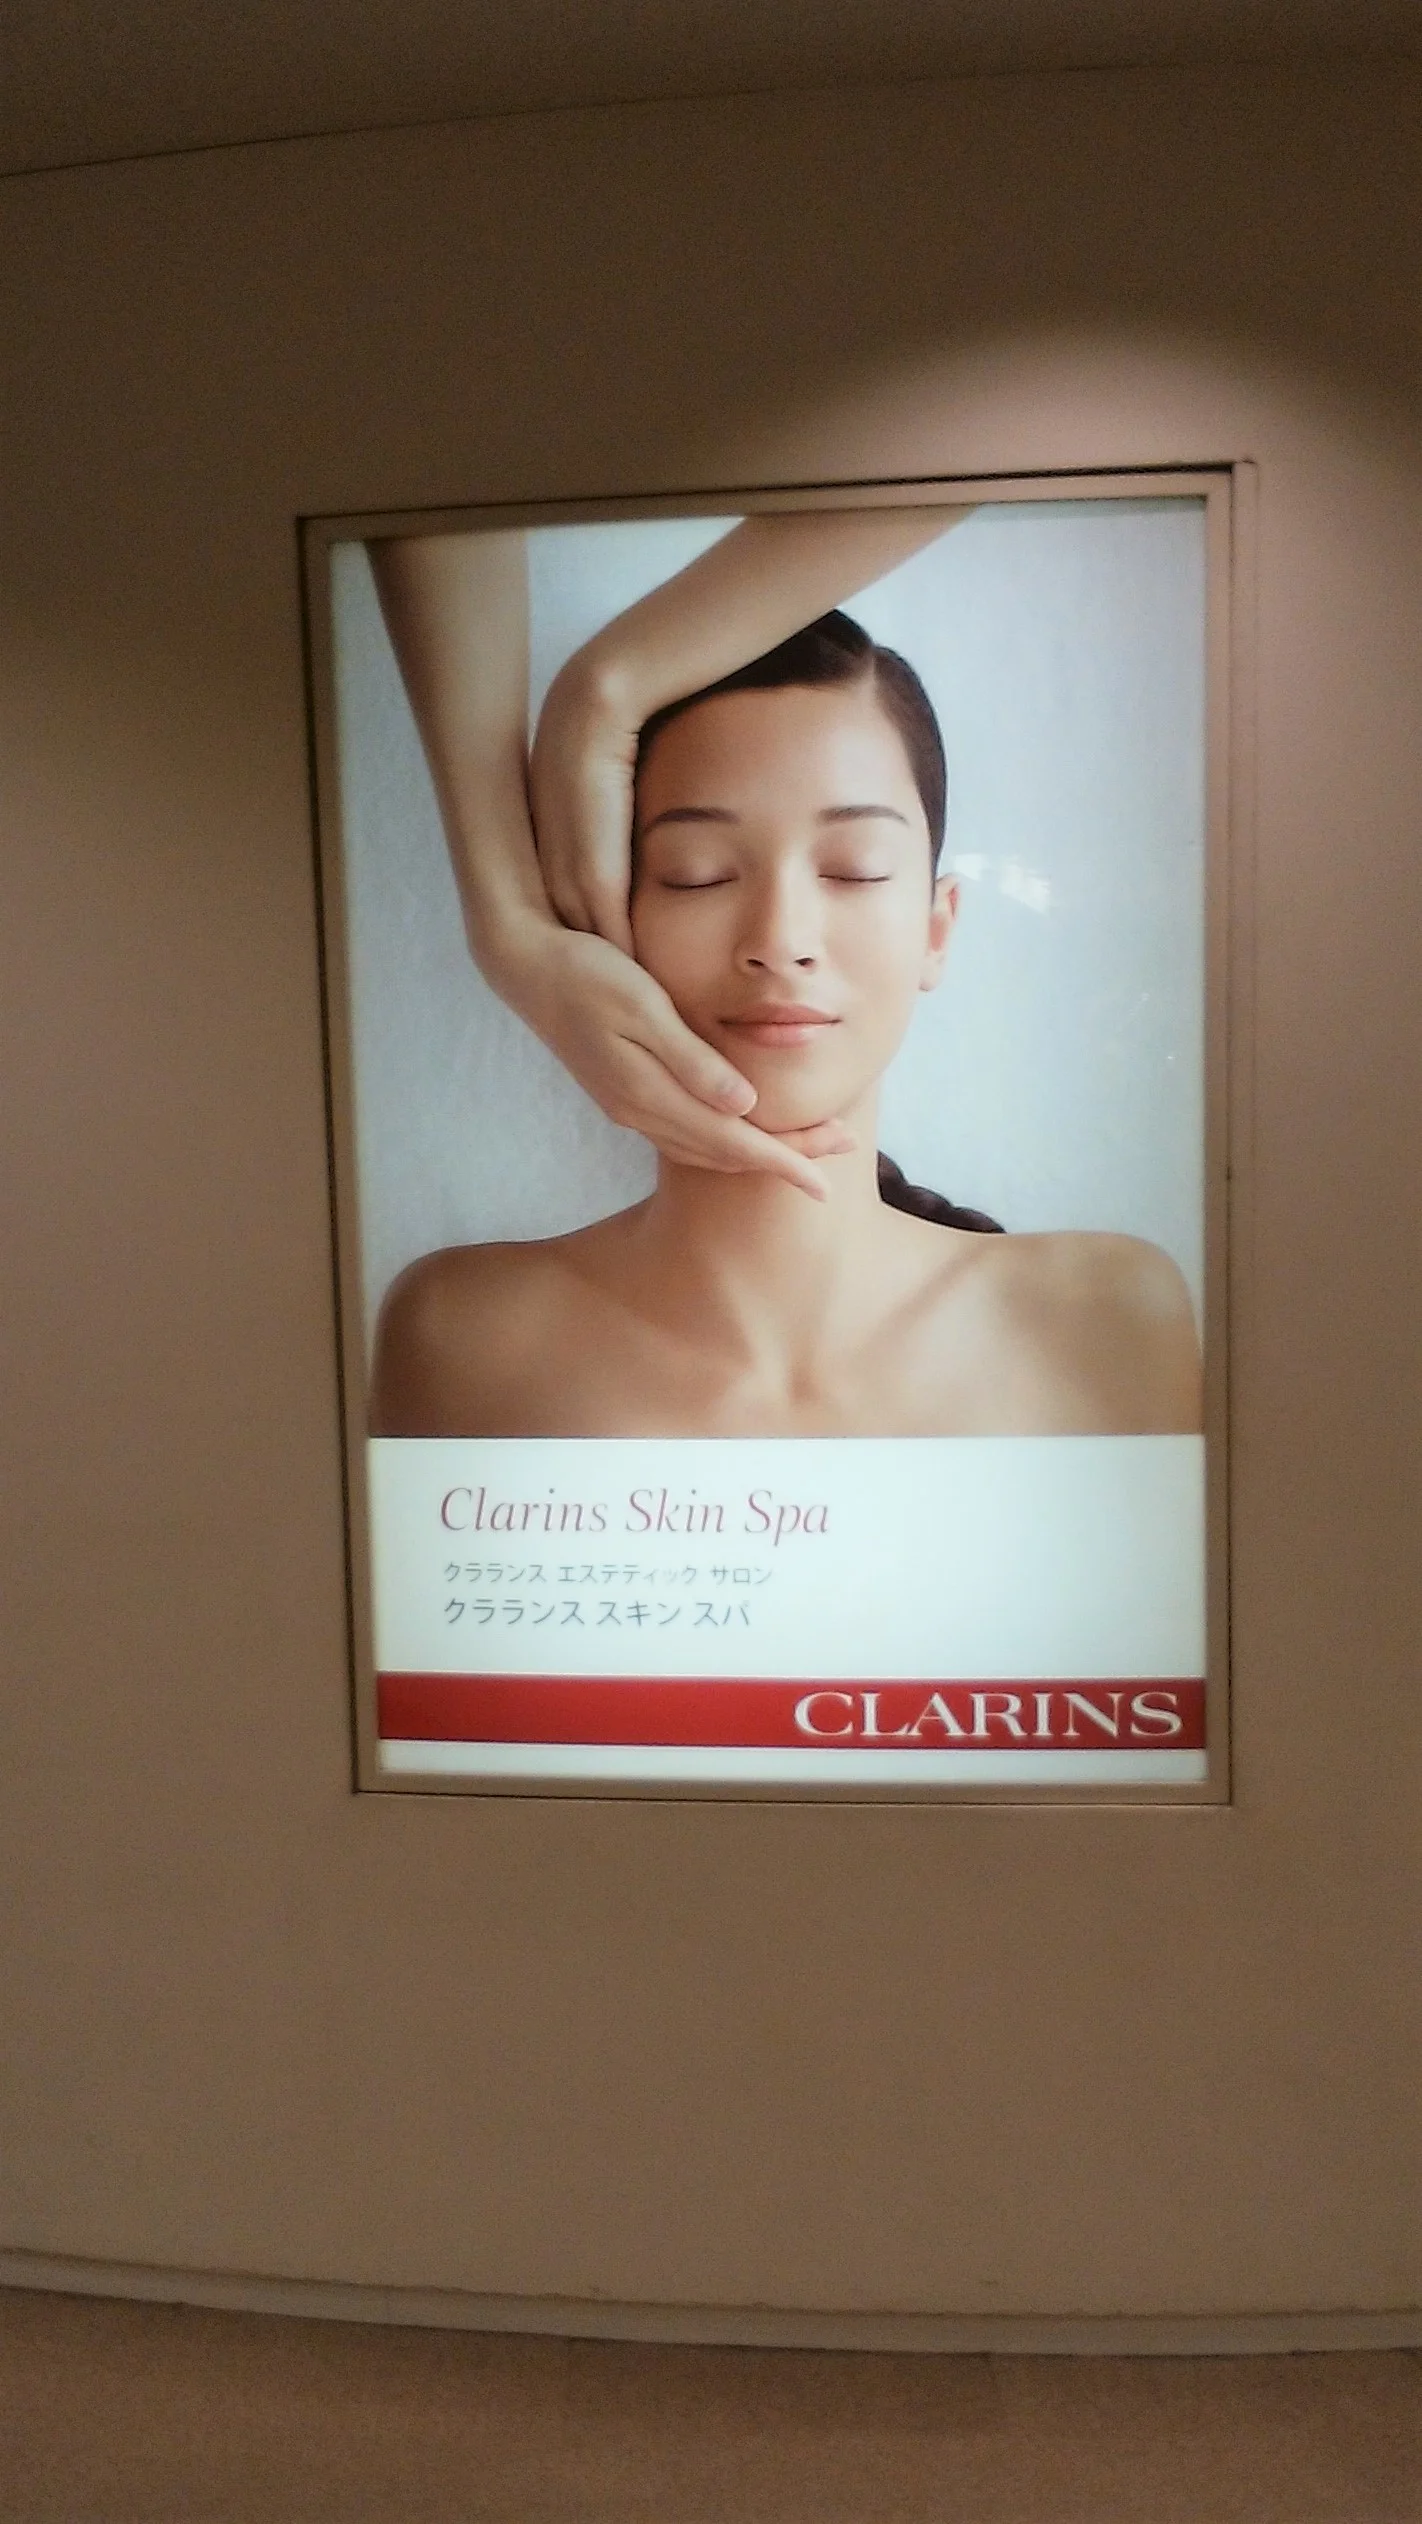 「CLARINS skin spa」 で夏のお肌のお手入れ♡_1_1-1